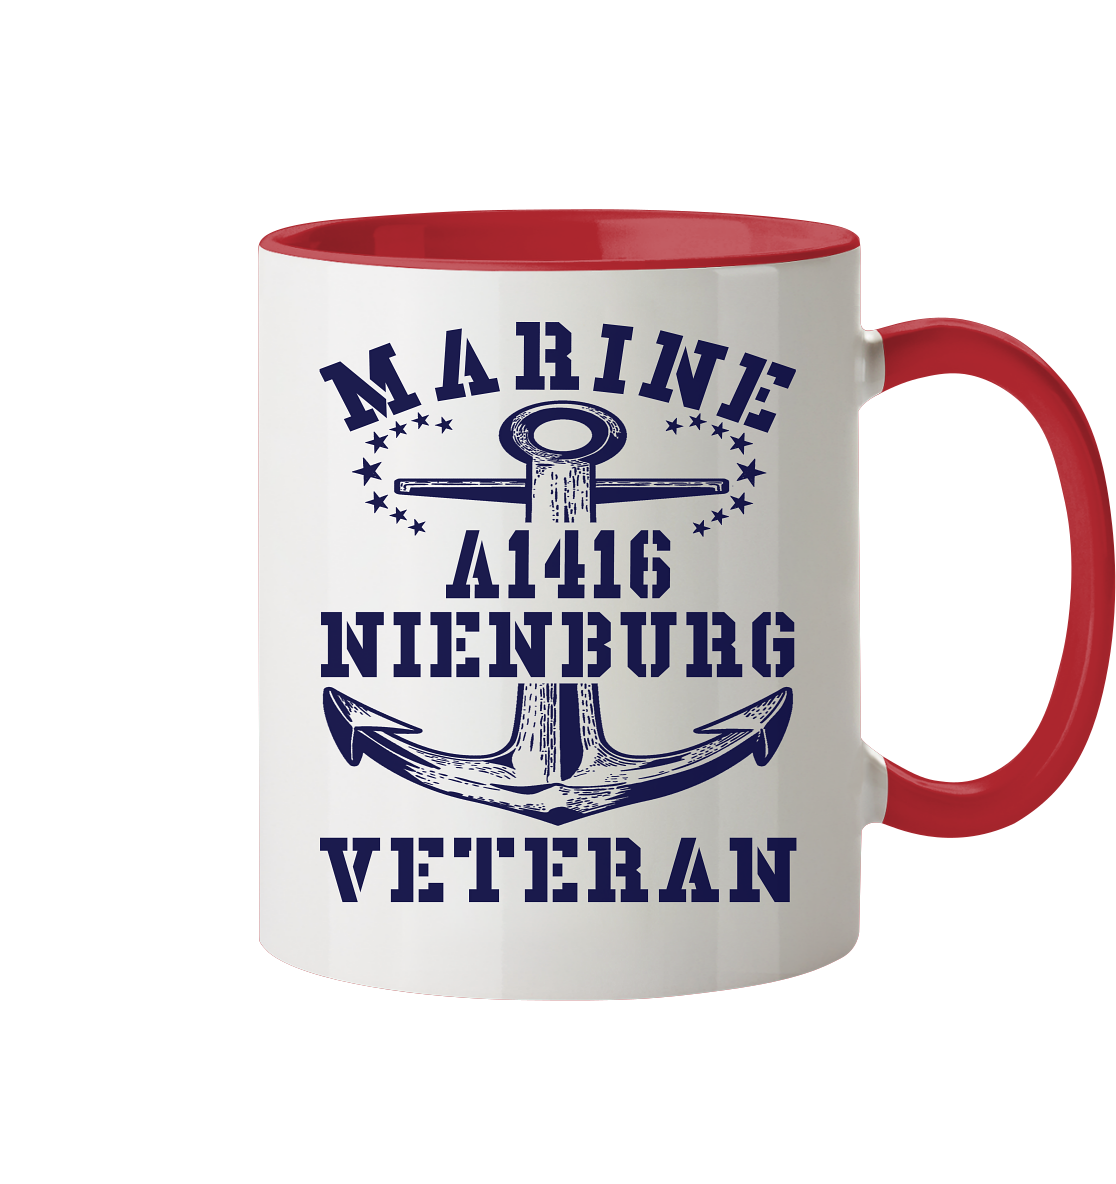 Troßschiff A1416 NIENBURG Marine Veteran  - Tasse zweifarbig